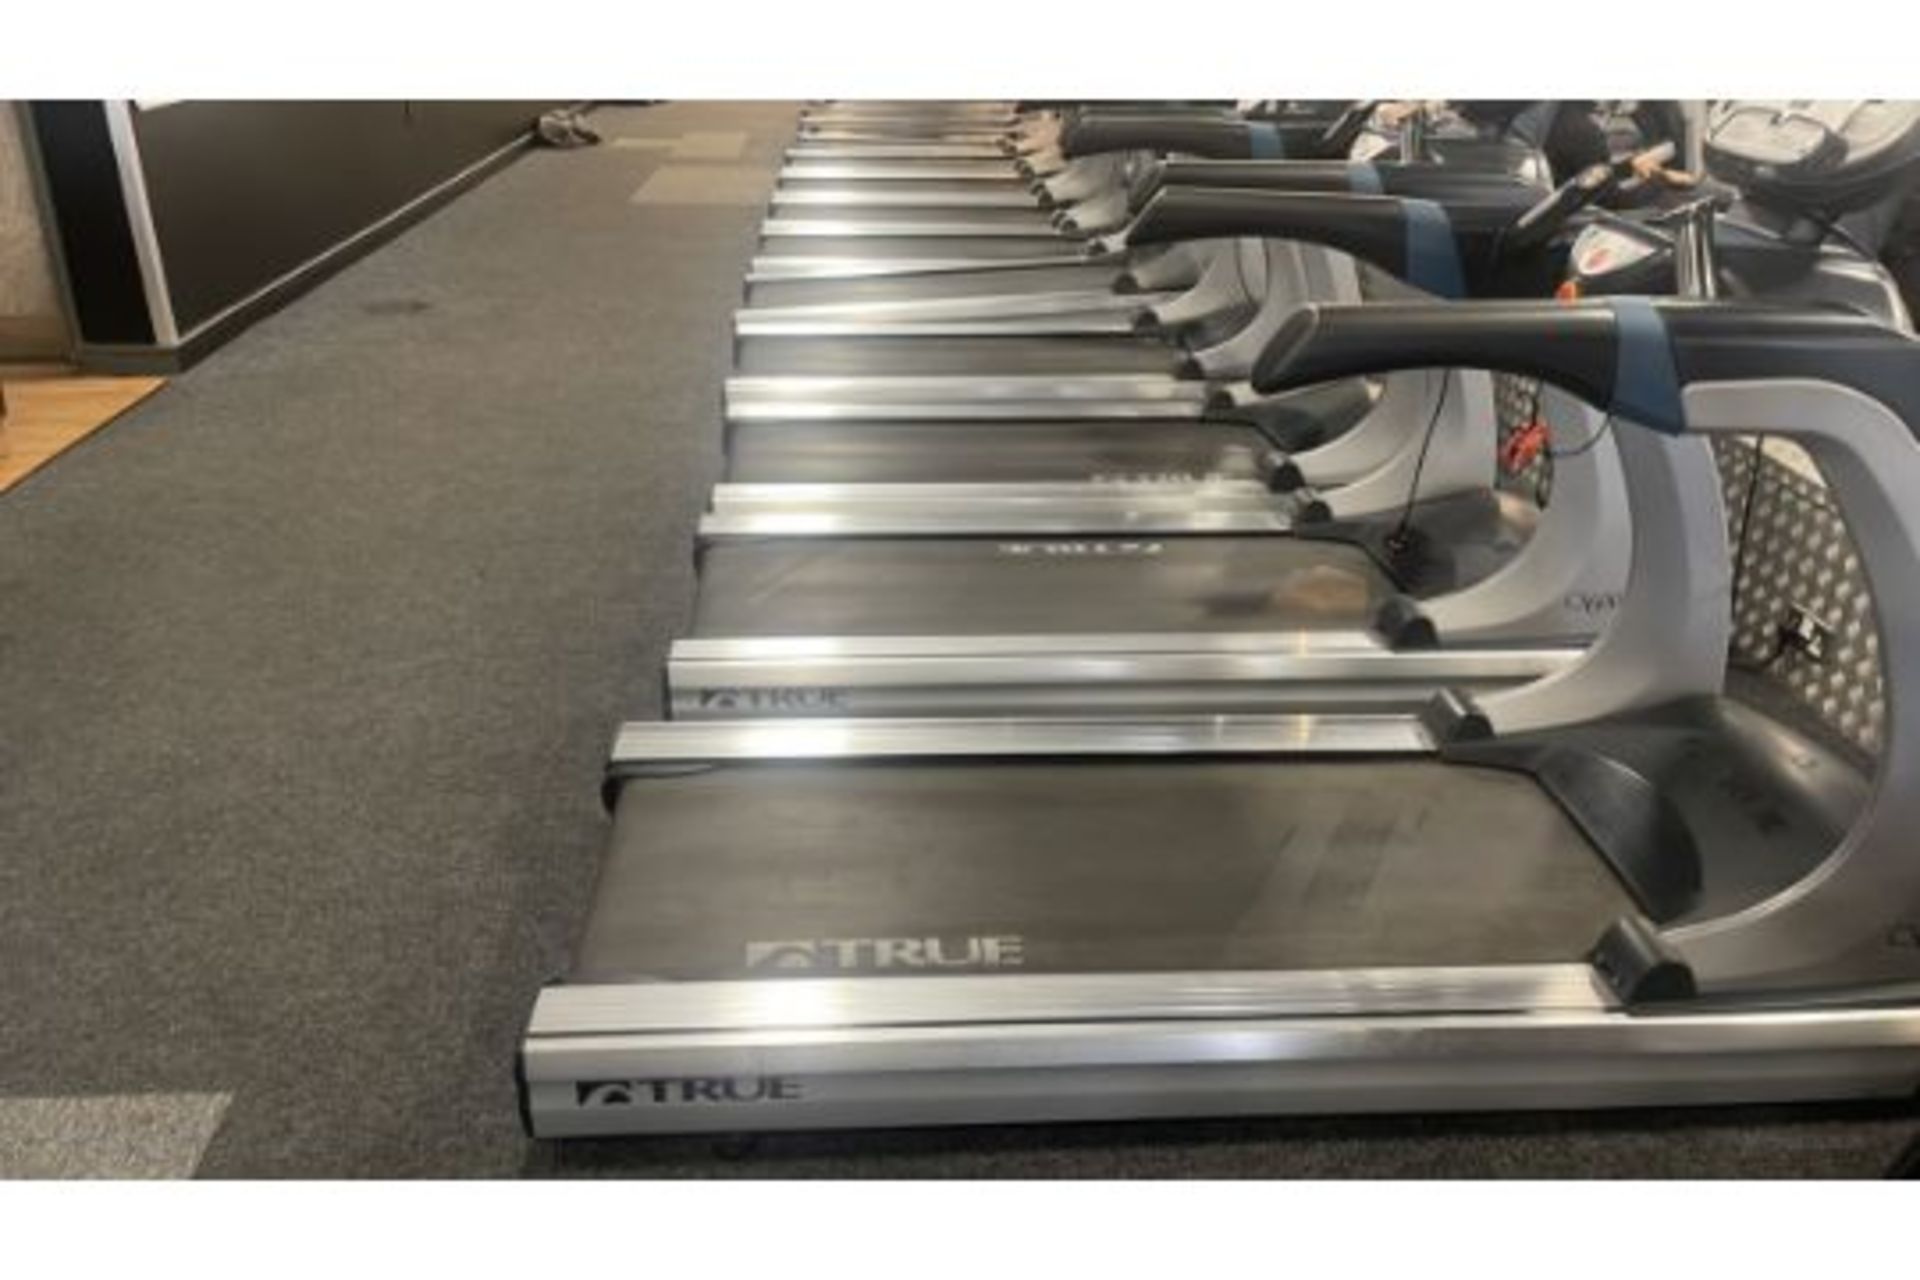 True Fitness 600 Treadmill - Image 4 of 5